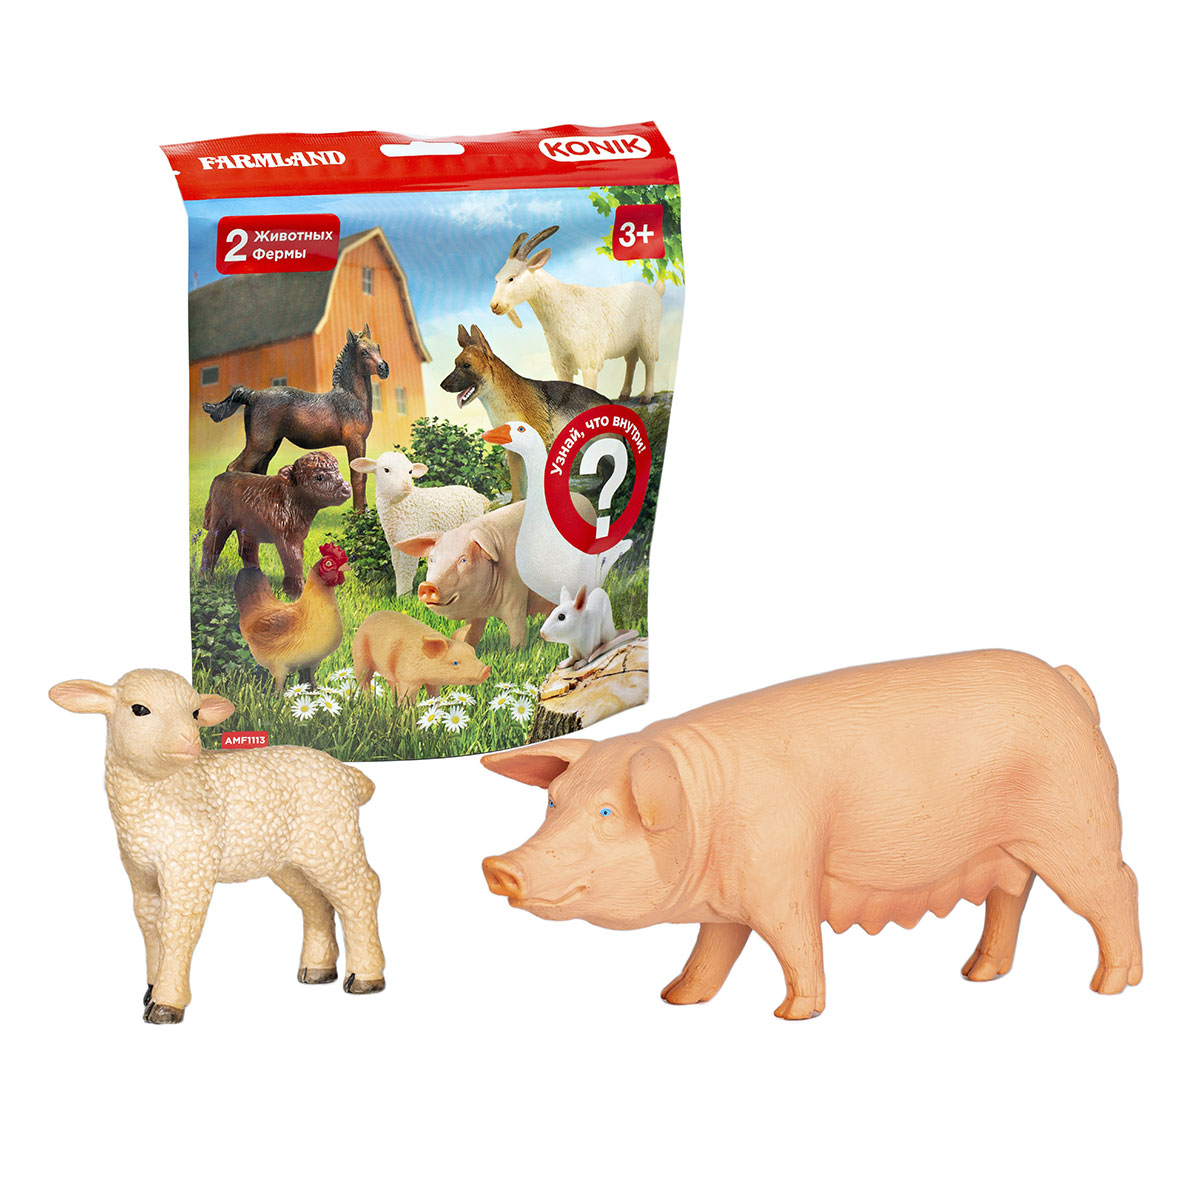 Пакетик-сюрприз KONIK Животные фермы, 2 шт konik пакетик сюрприз животные фермы 3 фигурки